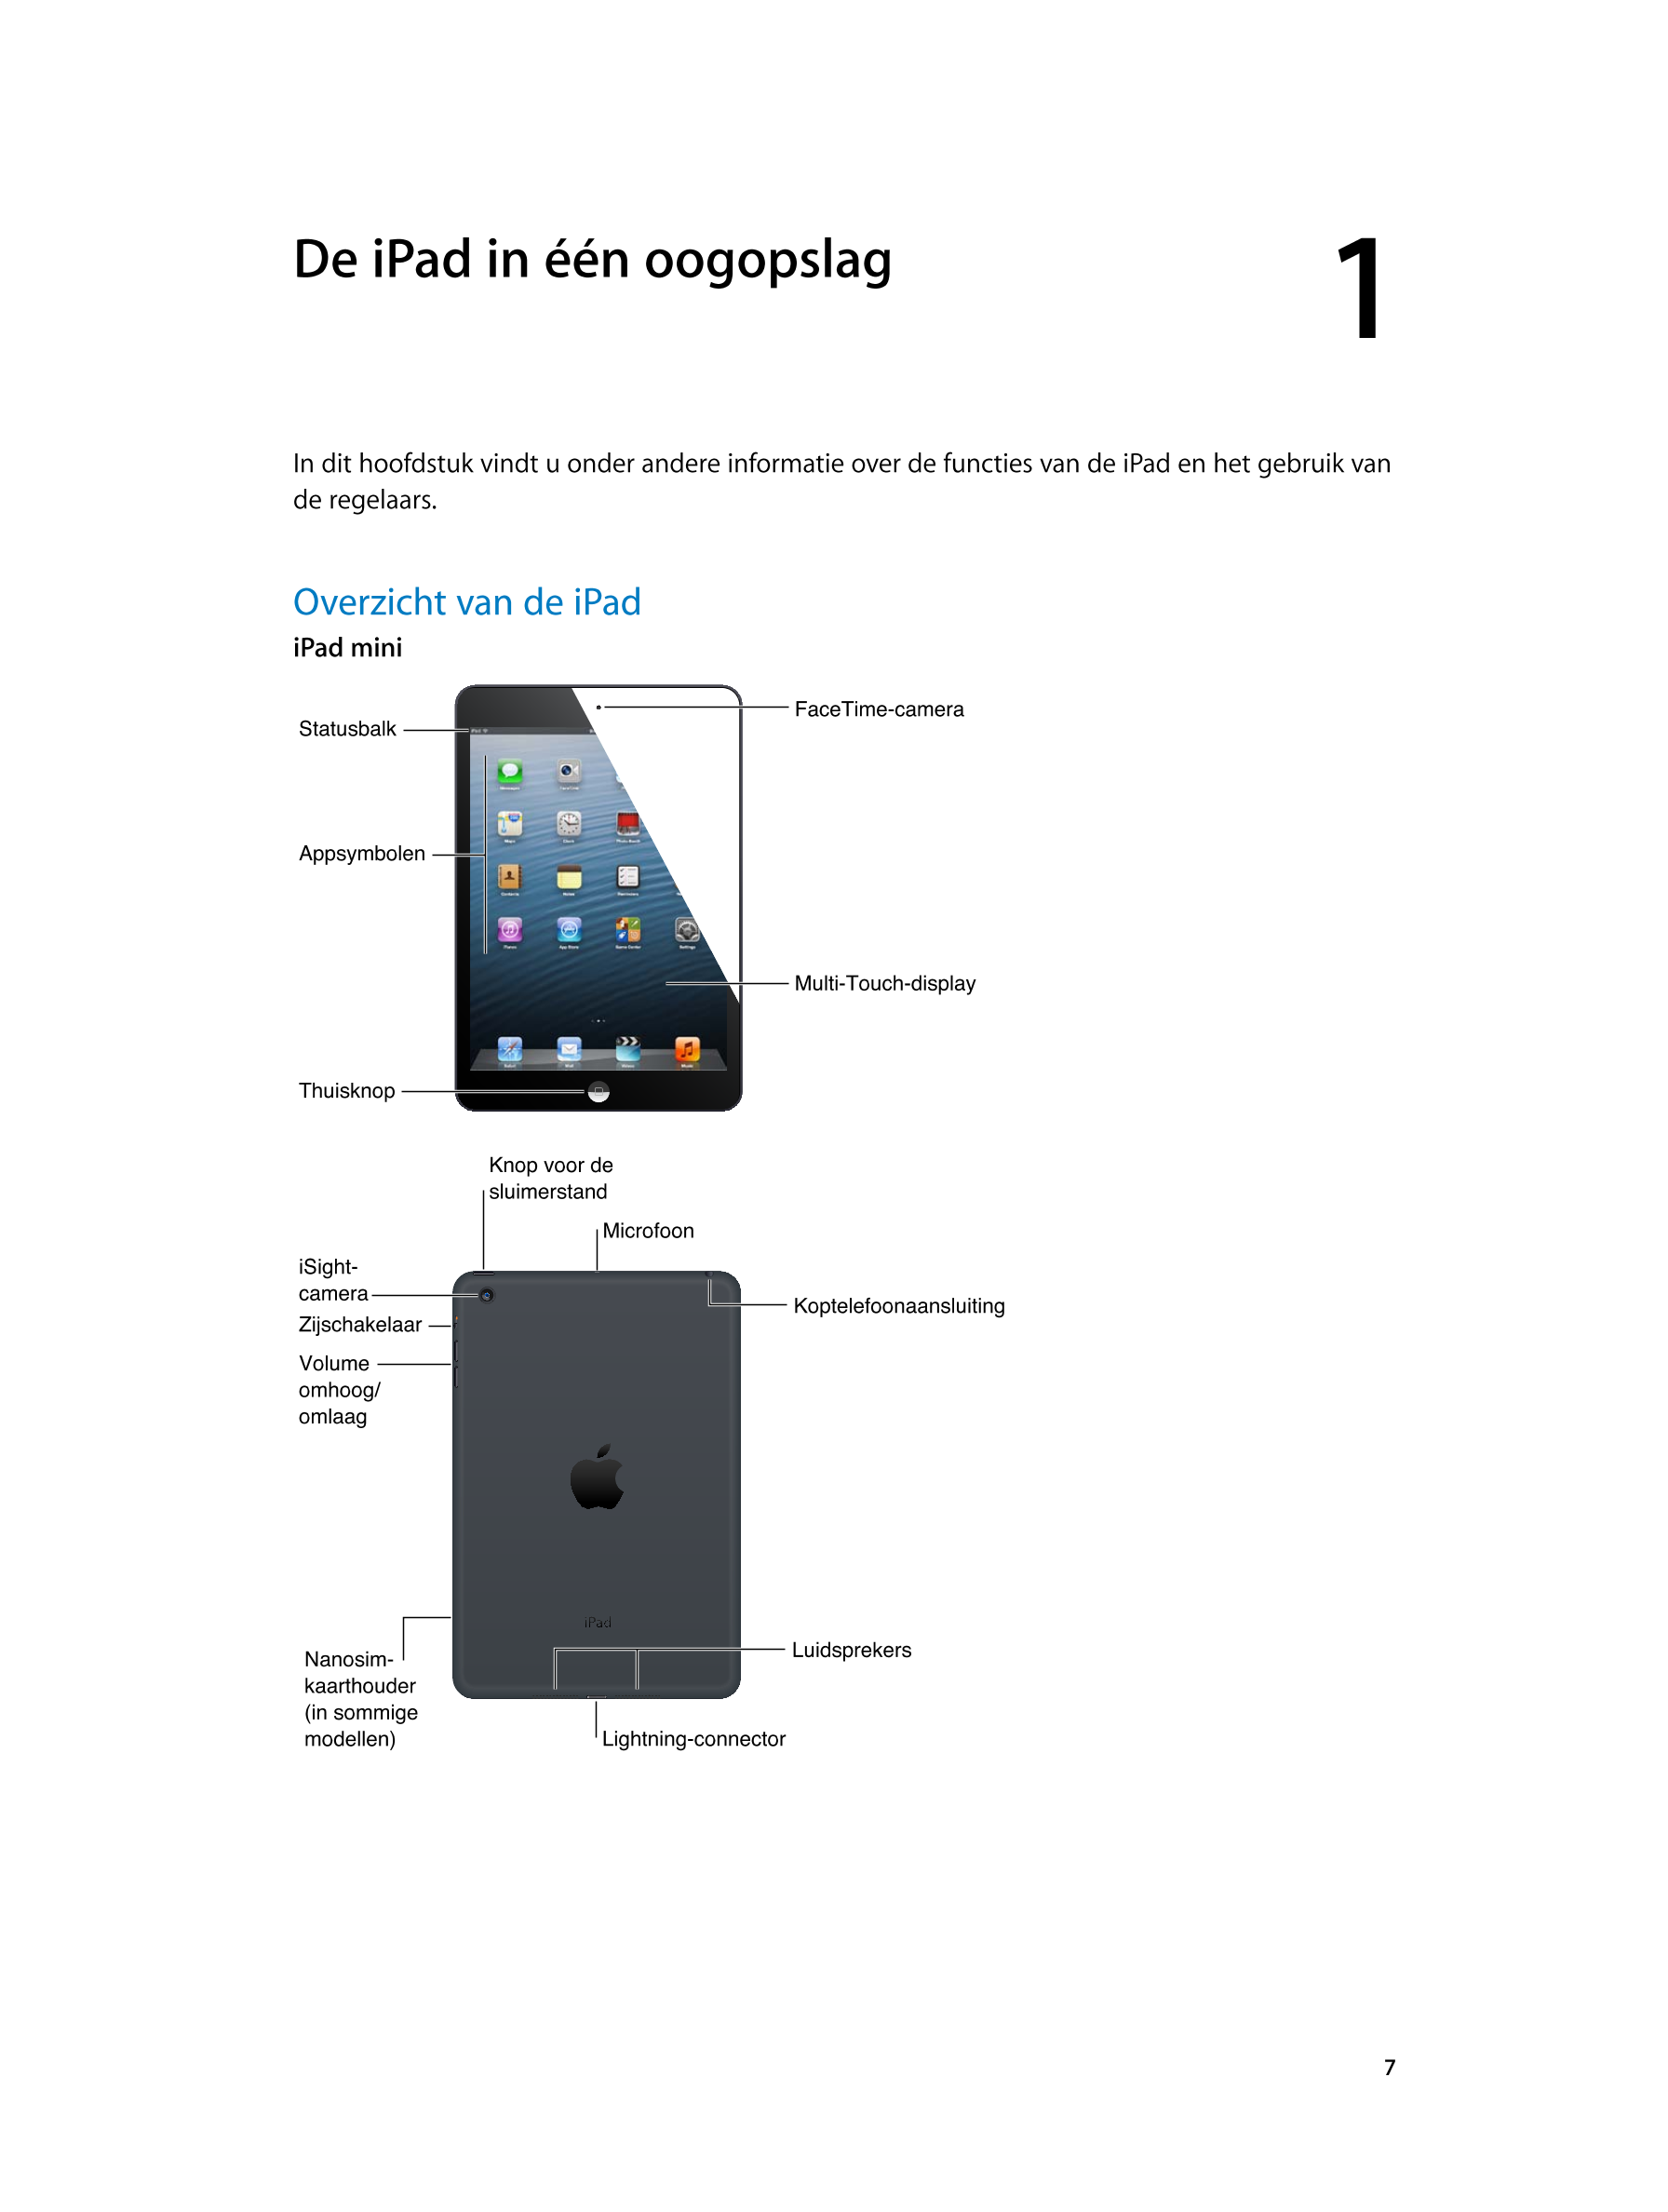   De iPad in één oogopslag 1
In dit hoofdstuk vindt u onder andere informatie over de functies van de iPad en het gebruik van 
d